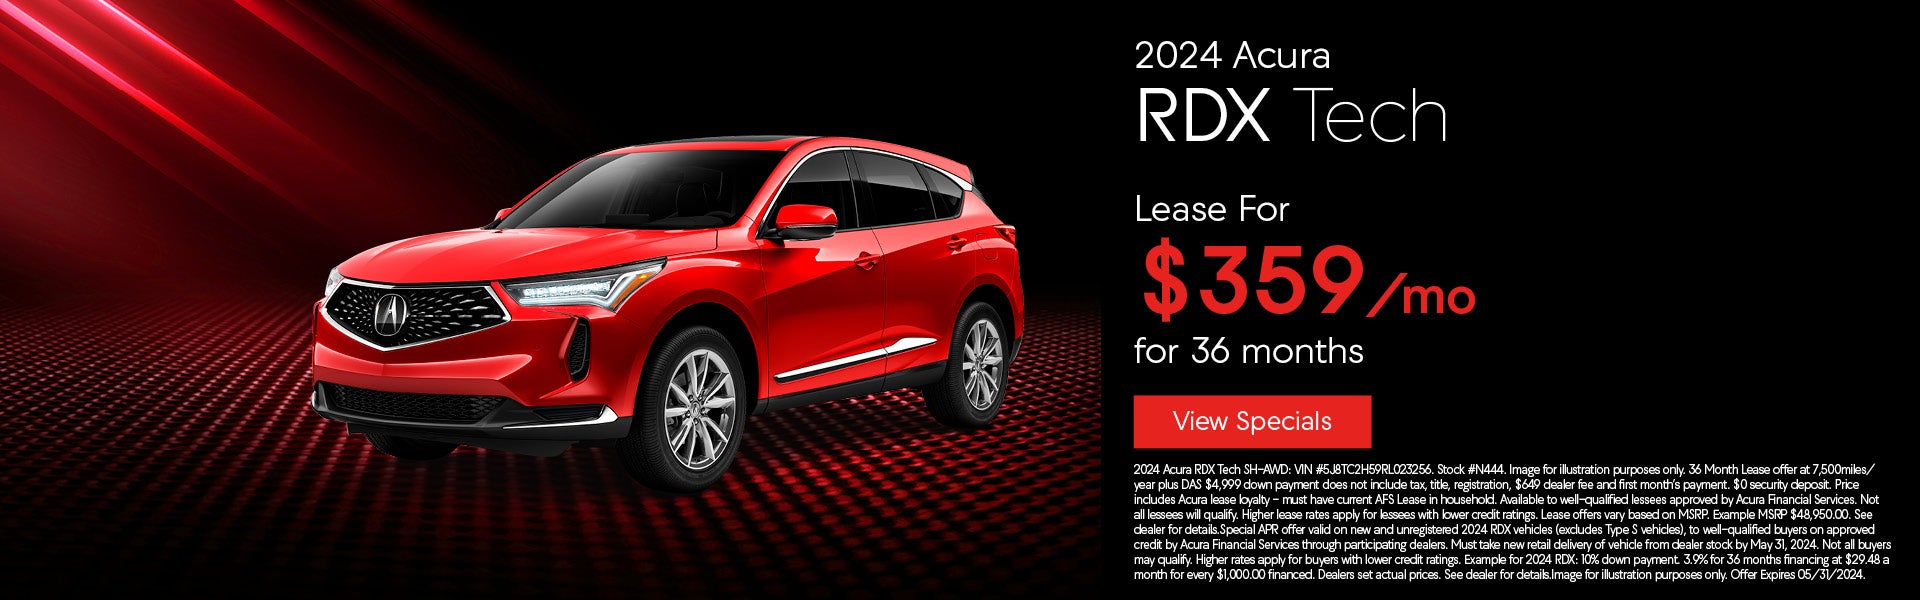 2024 Acura RDX Tech Offer